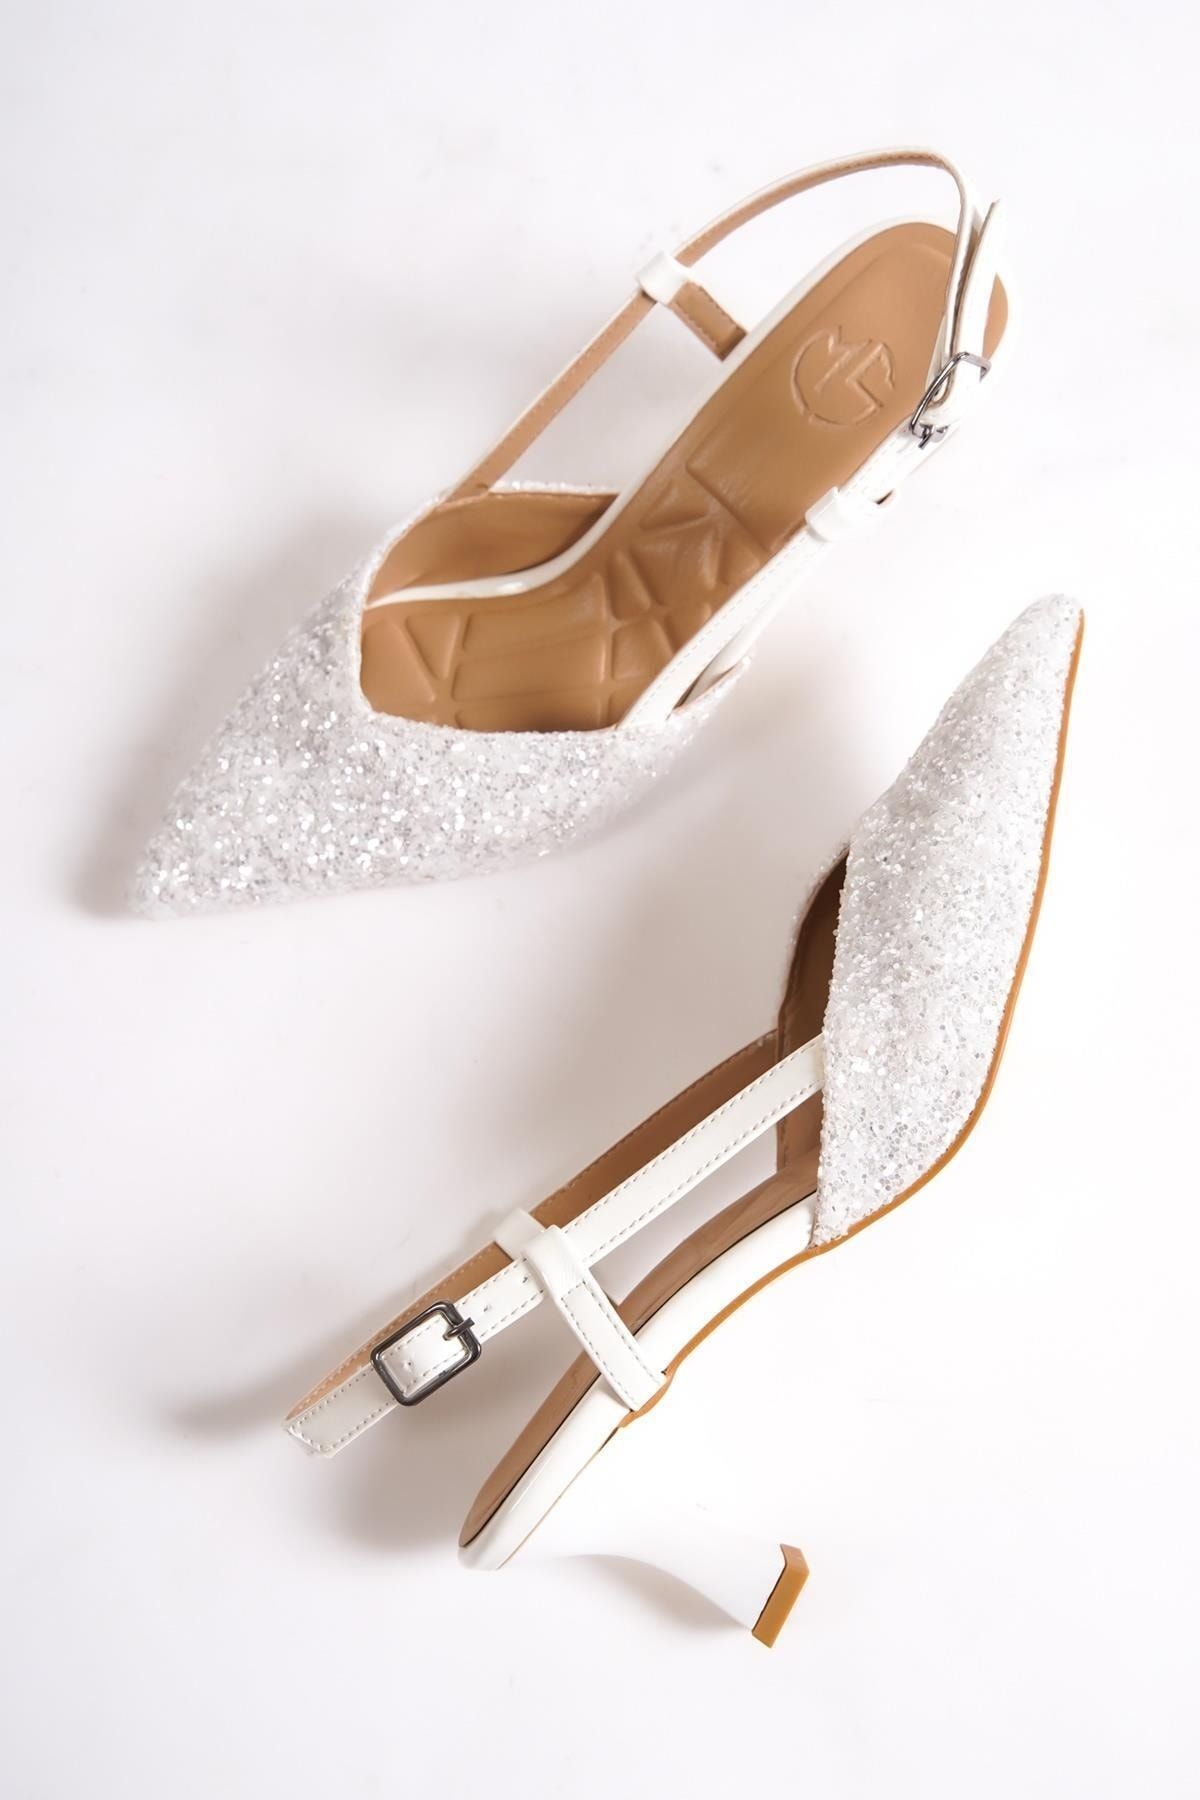 Modabuymus Paris S Beyaz Cam Kırığı Arkası Açık Stiletto Kısa Topuklu Abiye Ayakkabı